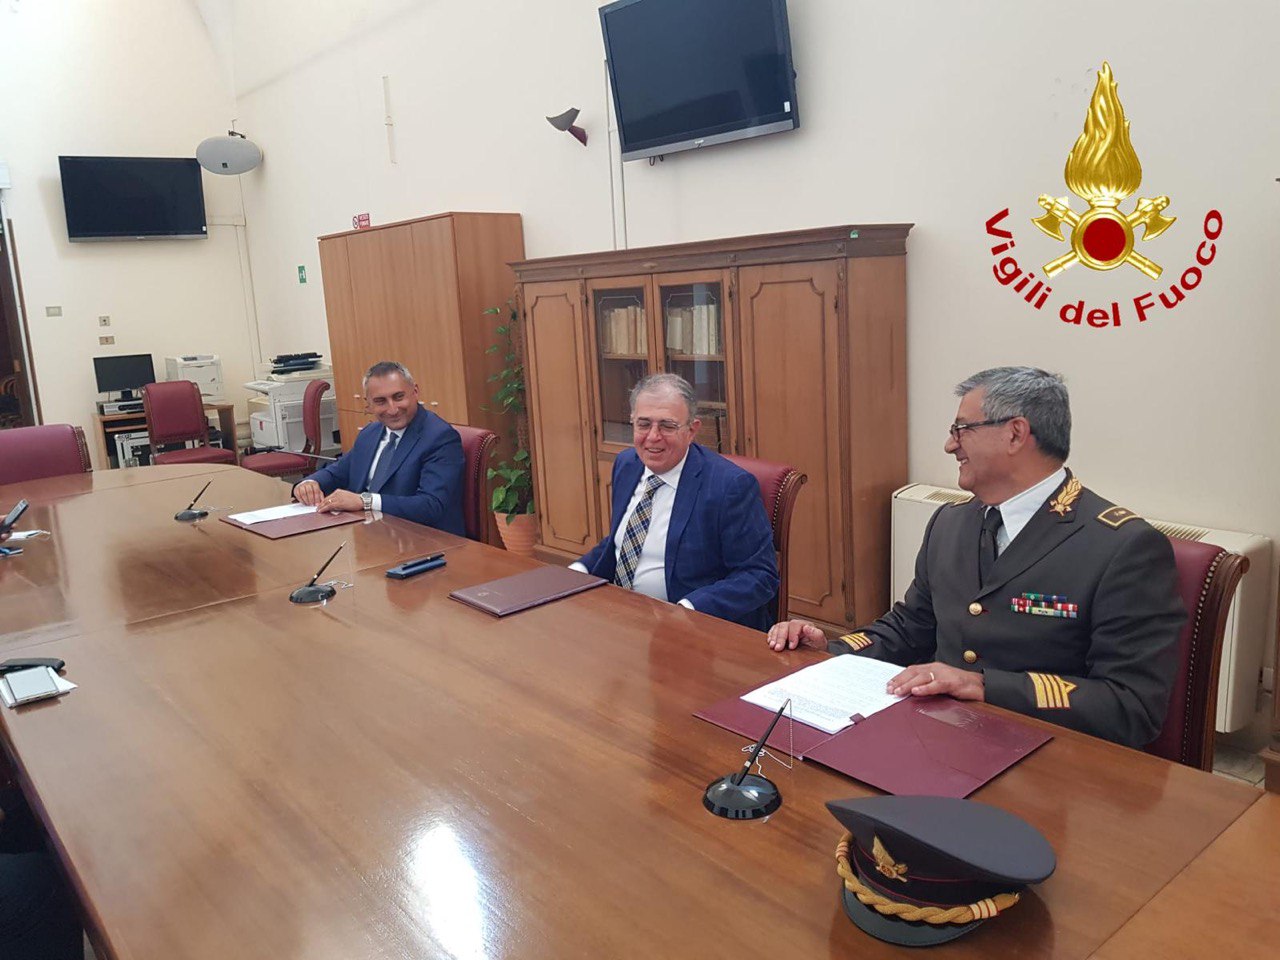 Potenziamento dei presidi antincendio nel Materano, siglata una convenzione tra la Provincia e il Ministero dell’interno